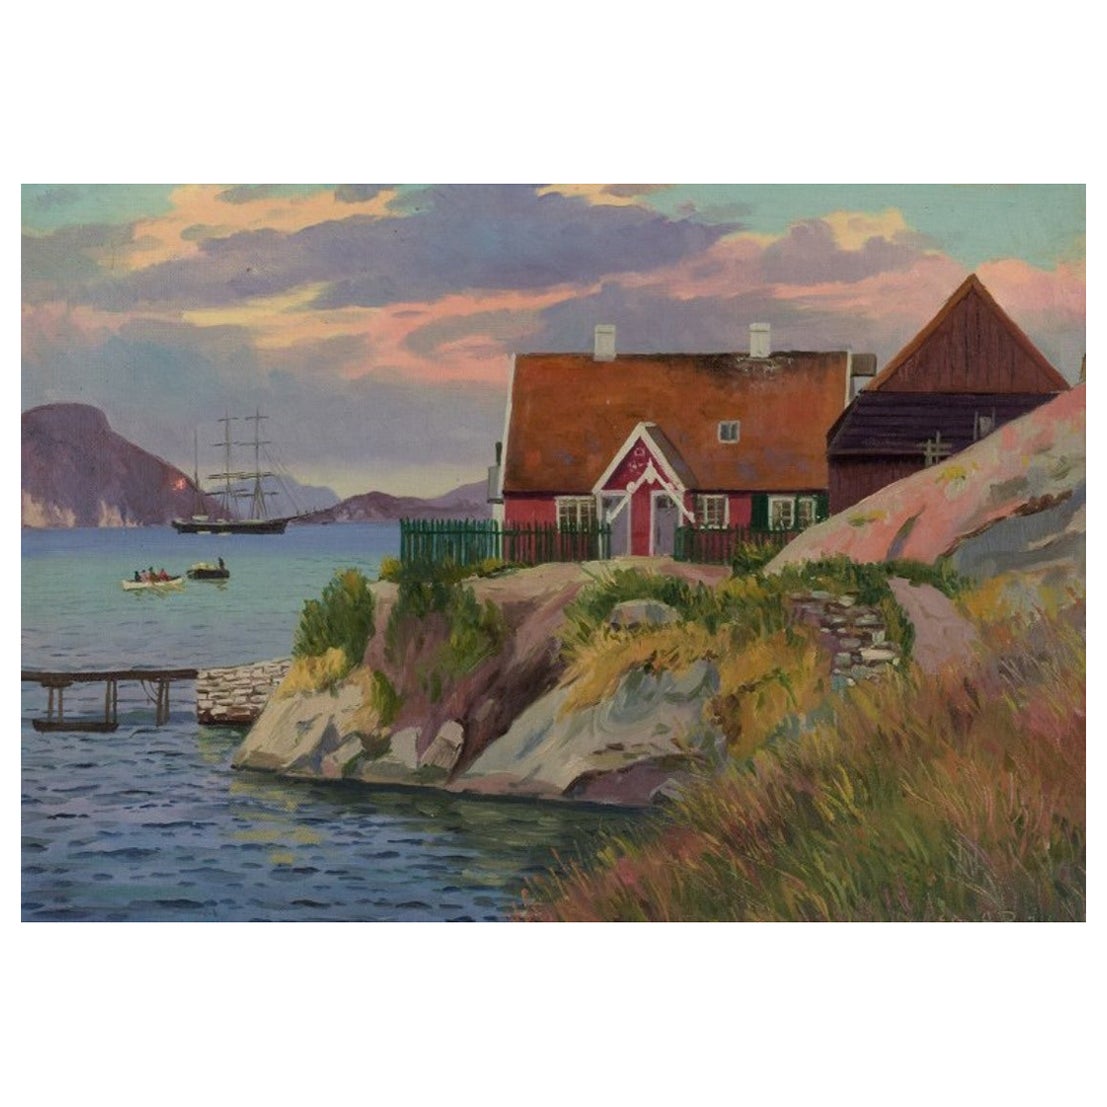 Emanuel A. Petersen (1894-1948). Ölgemälde auf Leinwand. Grönländisches Dorf. 